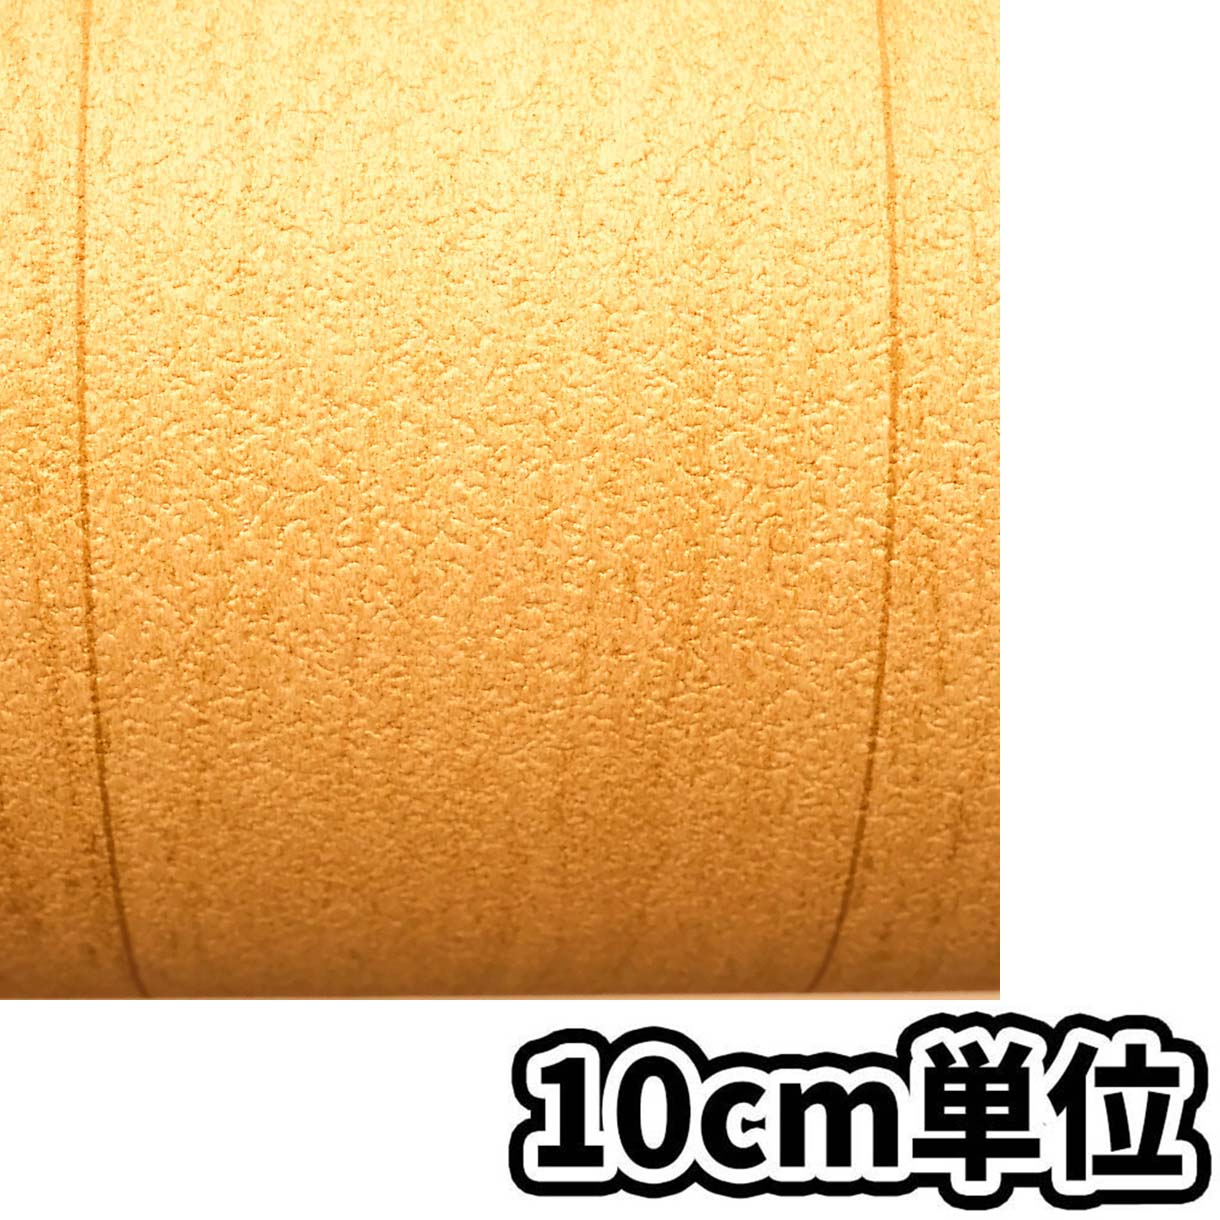 屋内外床材IOF-1012BE シンプル木 91.5cm巾x10m巻　10cm当たり